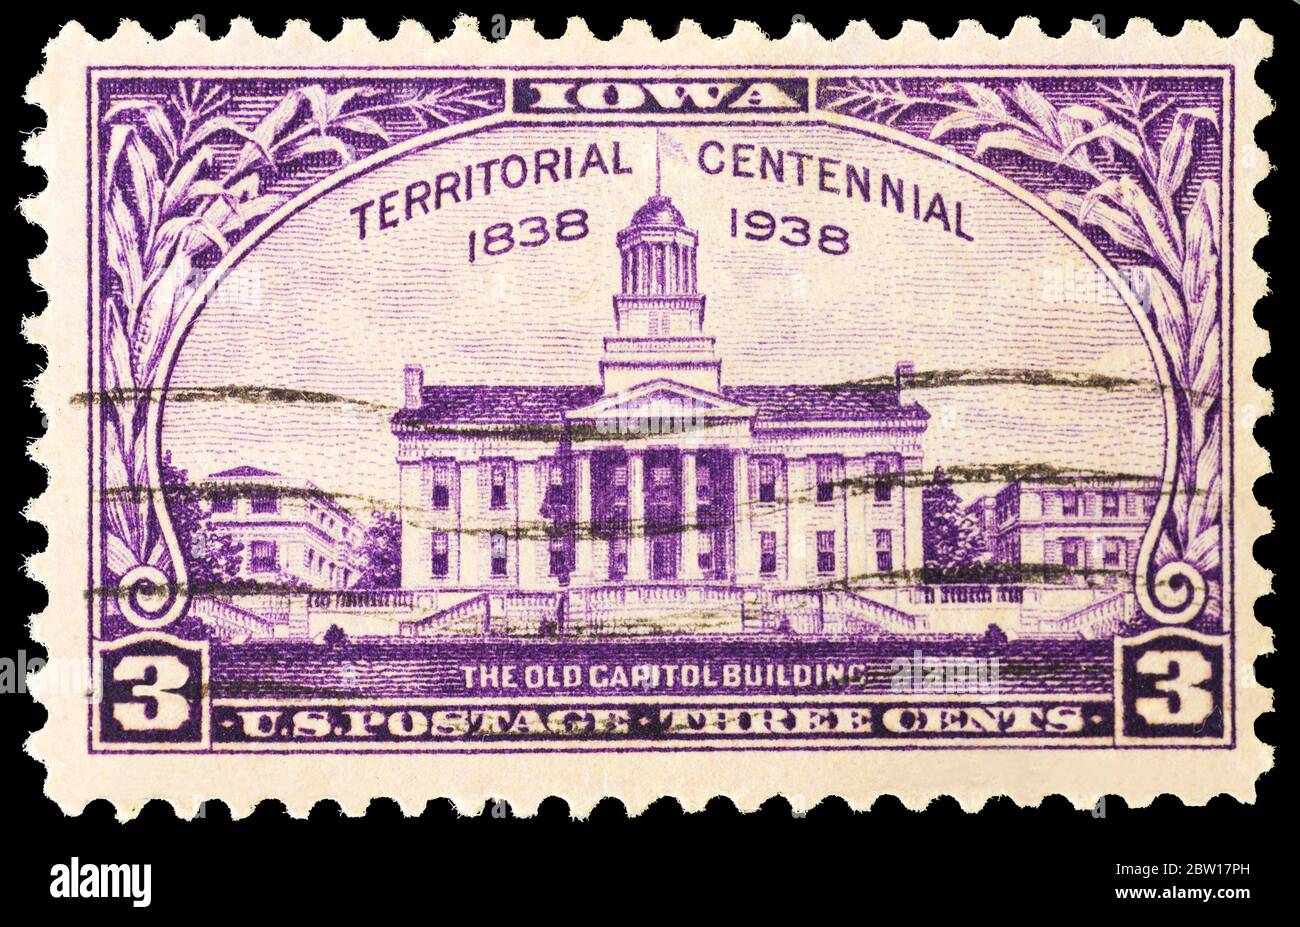 Un timbre de poste des États-Unis en 1938 commémorant le centenaire du territoire de l'Iowa. L'image montre le bâtiment du Vieux Capitole. Banque D'Images